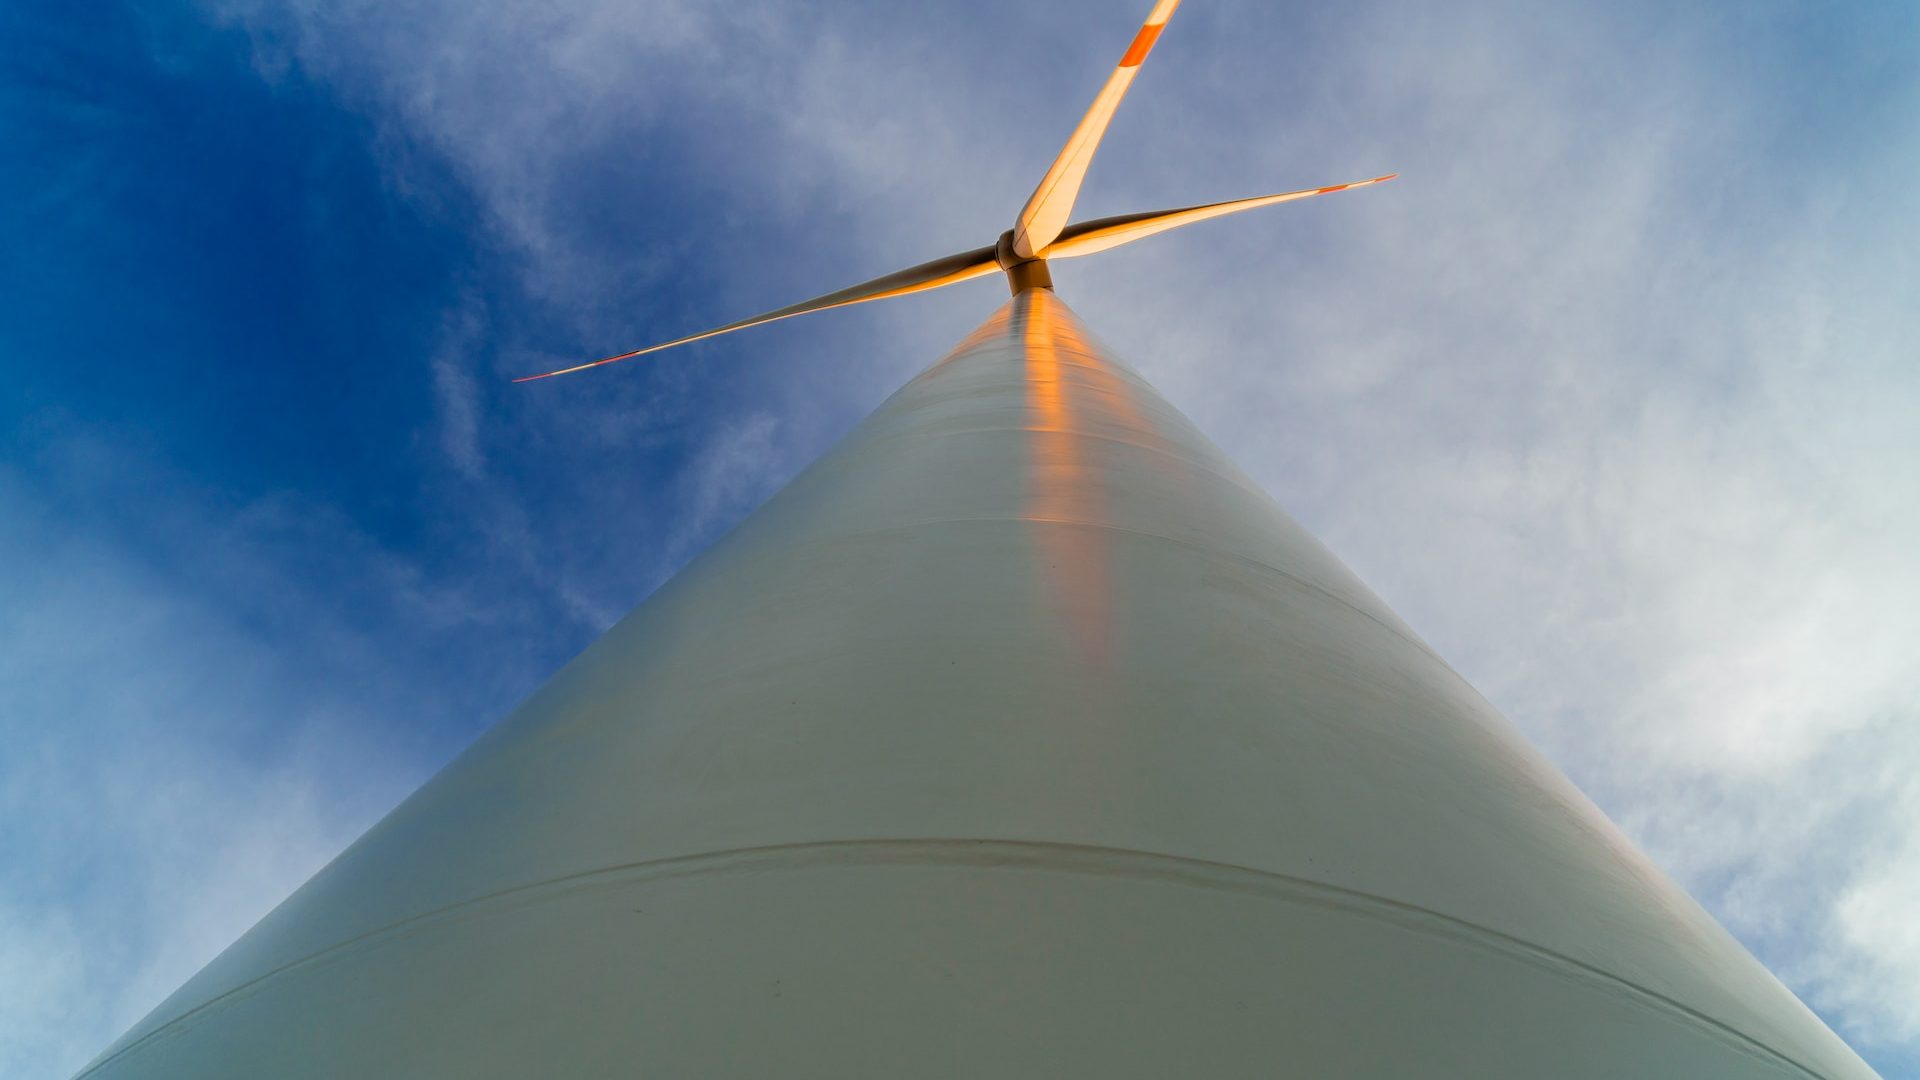 Rinnovabili • Impianti eolici al 2030: GWEC, rischiamo un gap di 1,5 TW